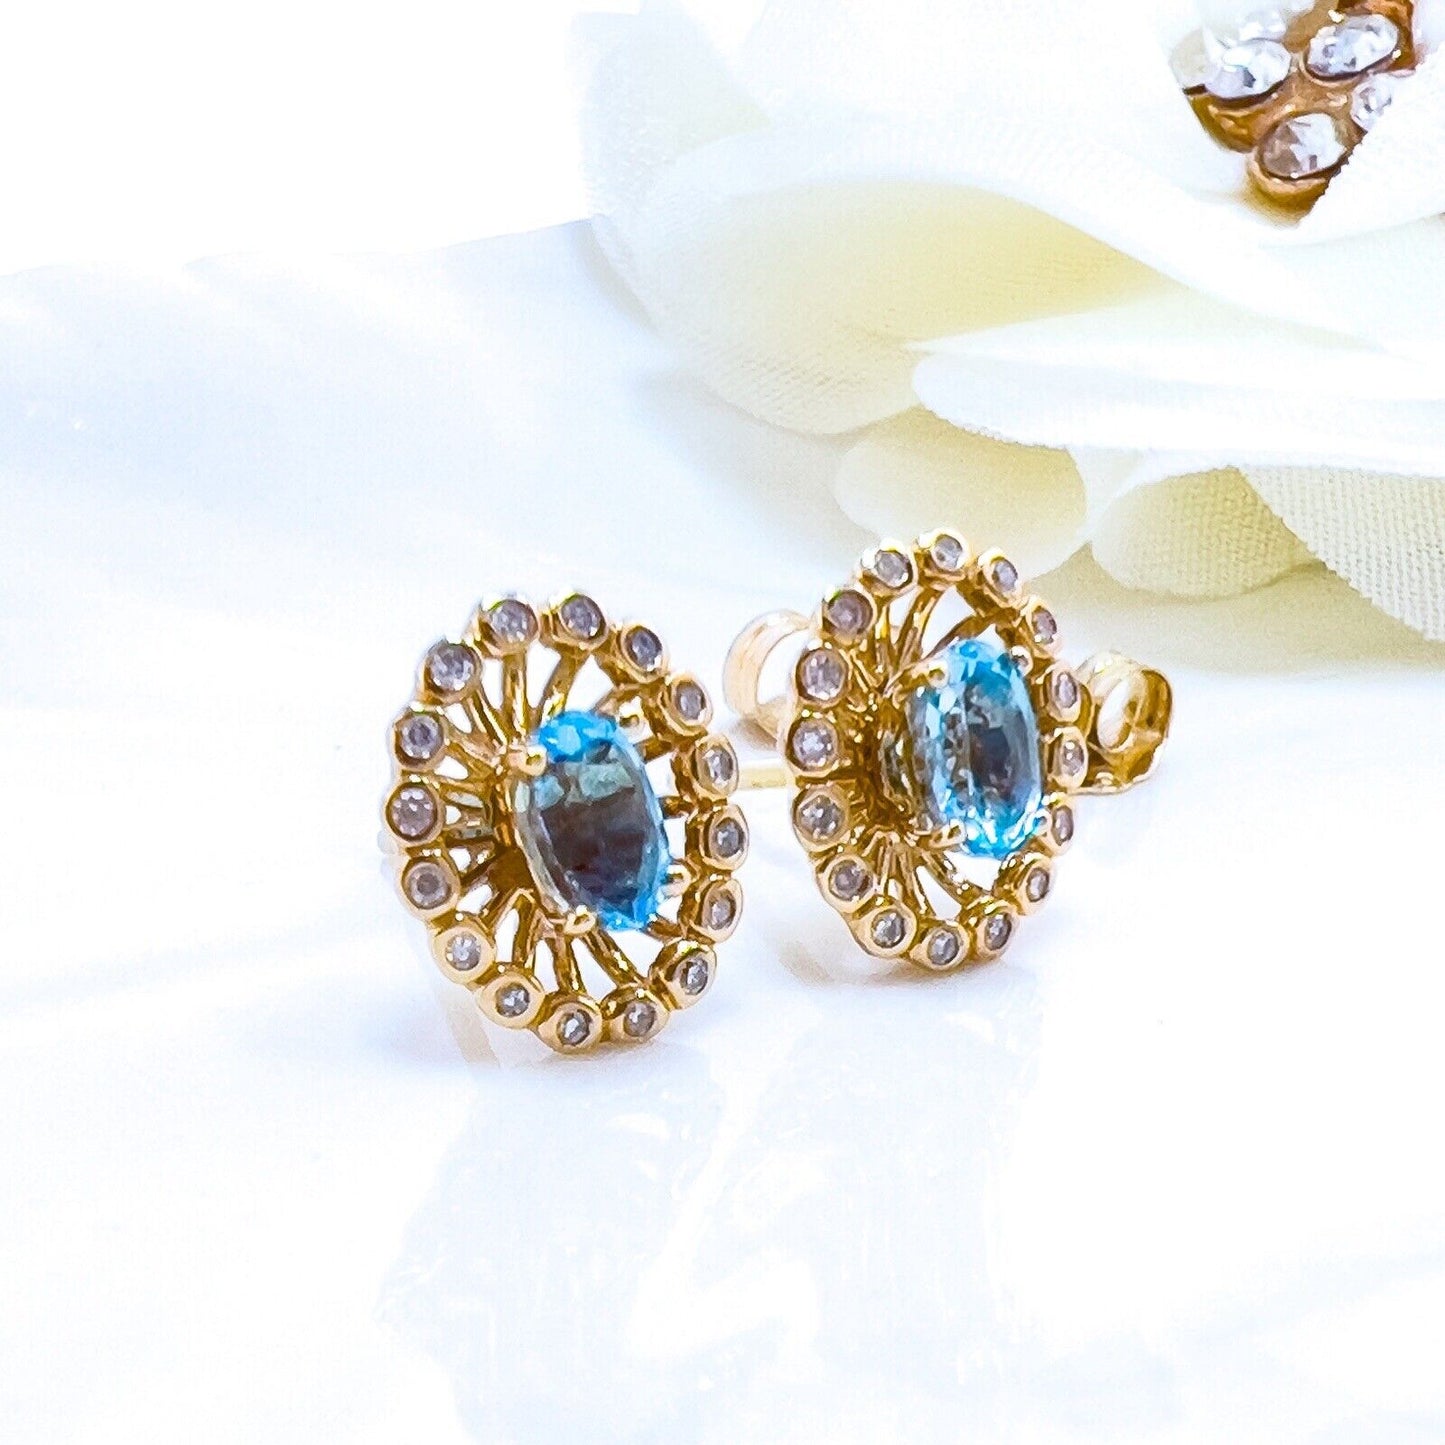 14k Yellow Gold Swiss Blue Topaz & Diamond Halo Oval Stud Earrings, New